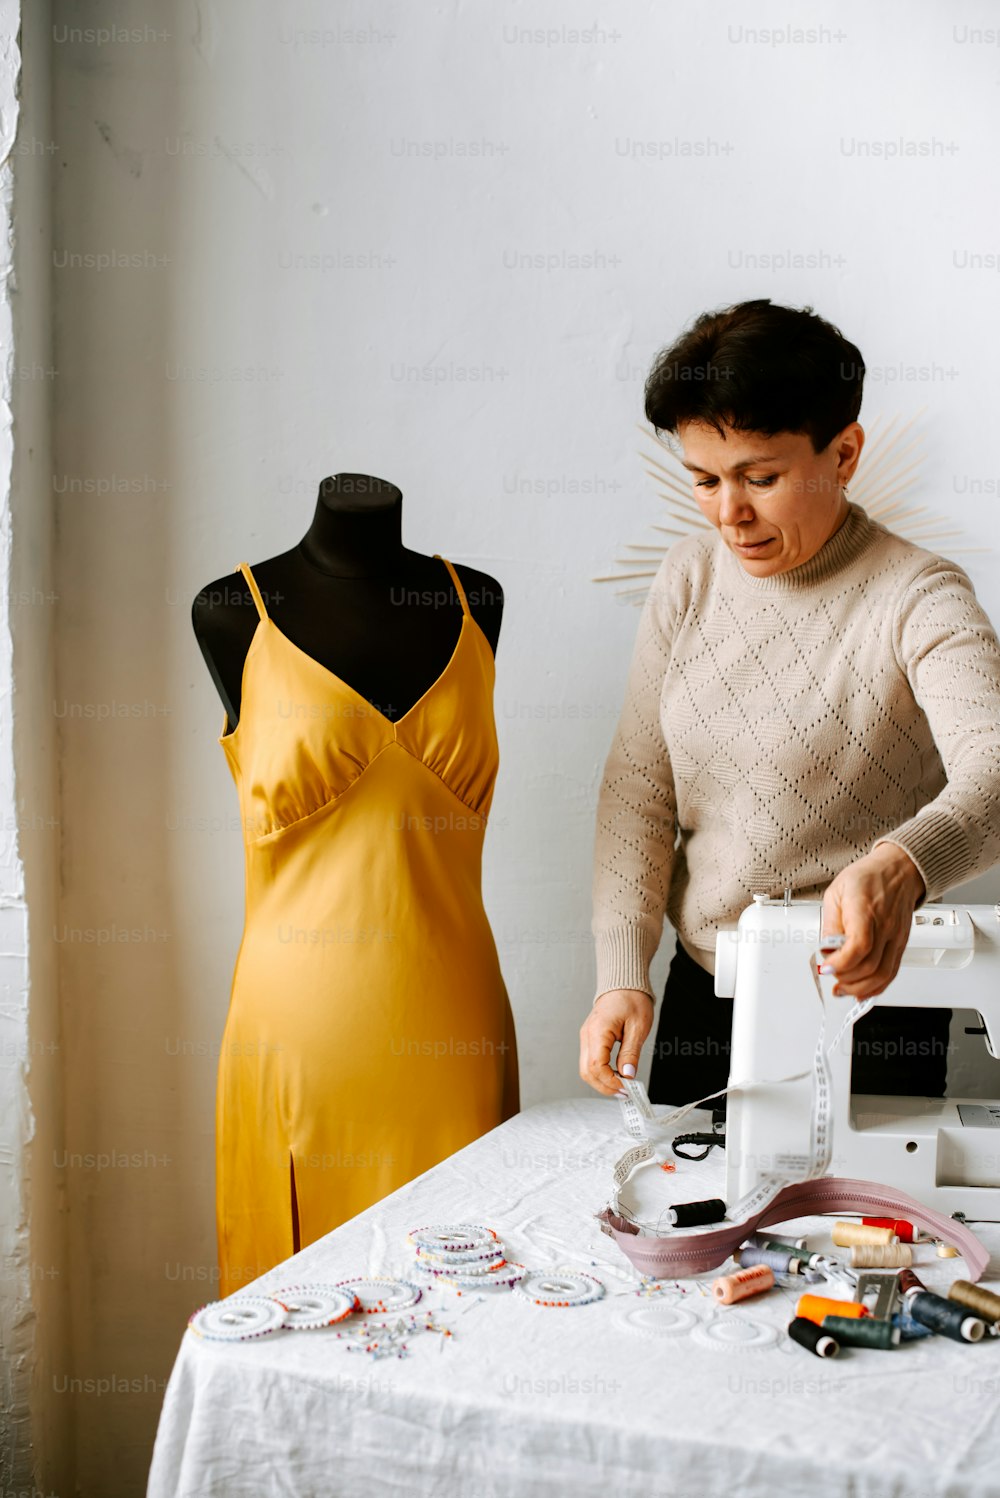 Una mujer con un vestido amarillo está haciendo un vestido